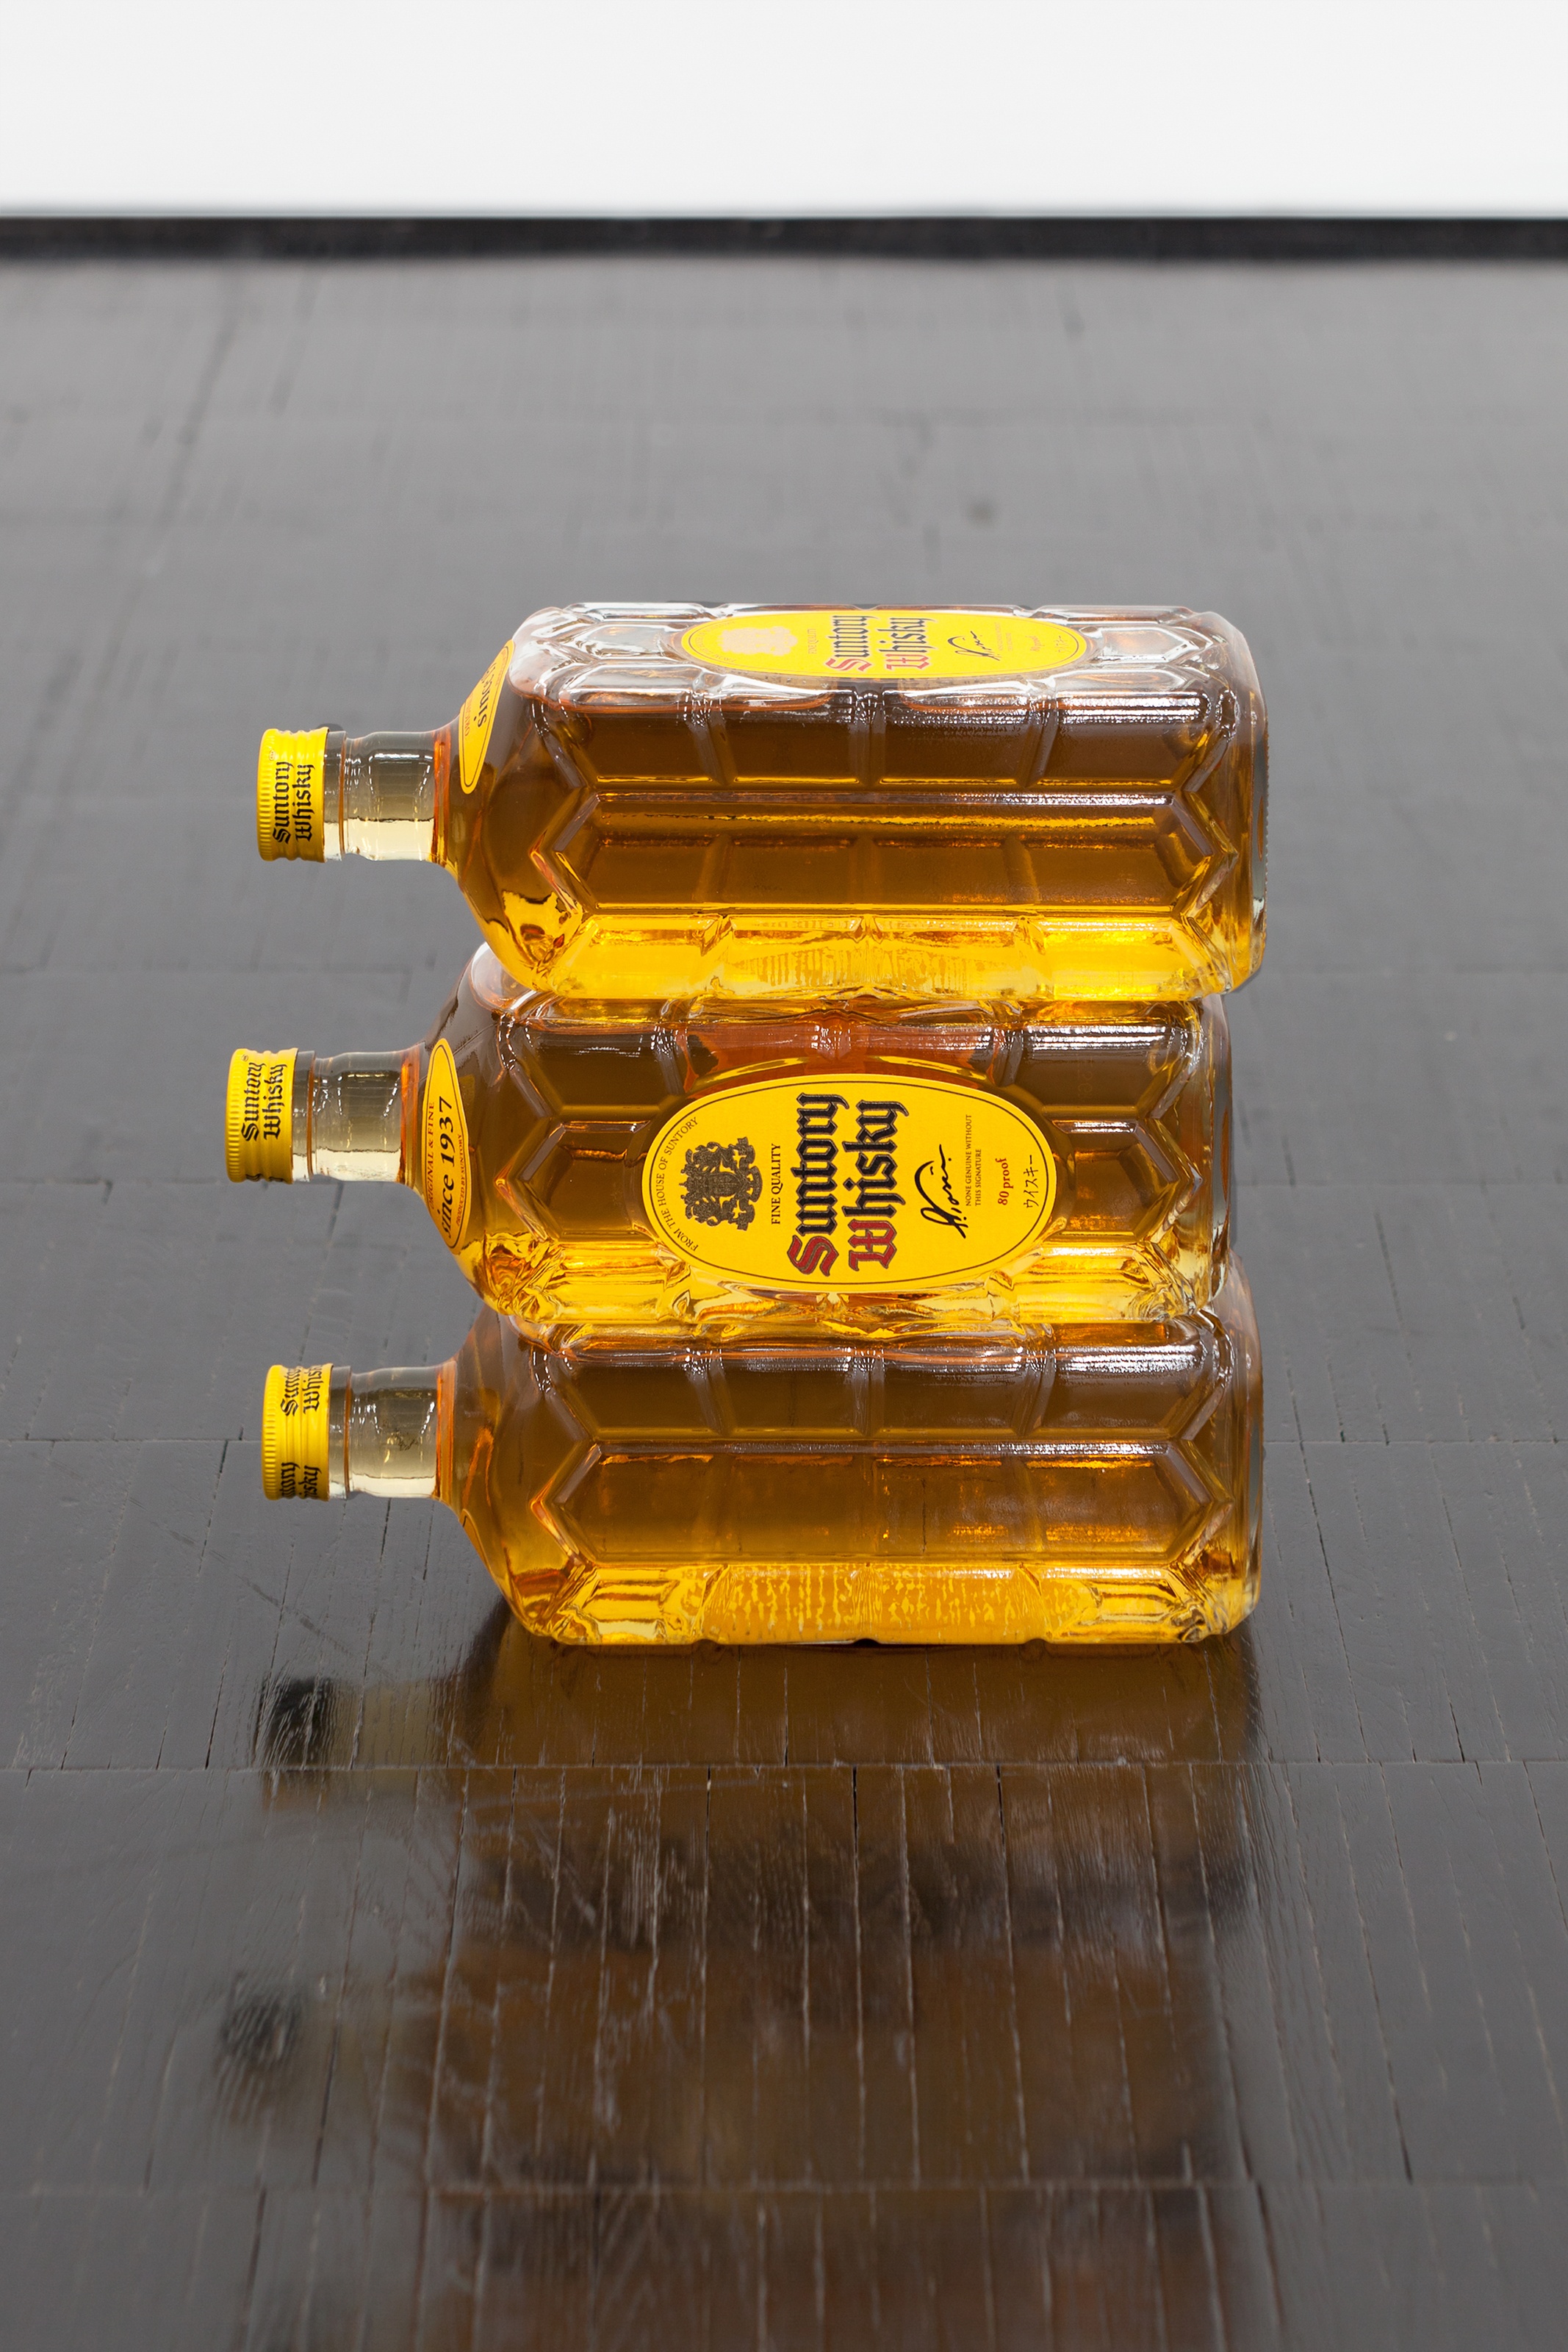 Yuki KimuraSuntory Whisky (Kaku), 20233 liquor bottles22.5 x 23 x 7.5 cm | 8 3/4 x 9 x 3 in